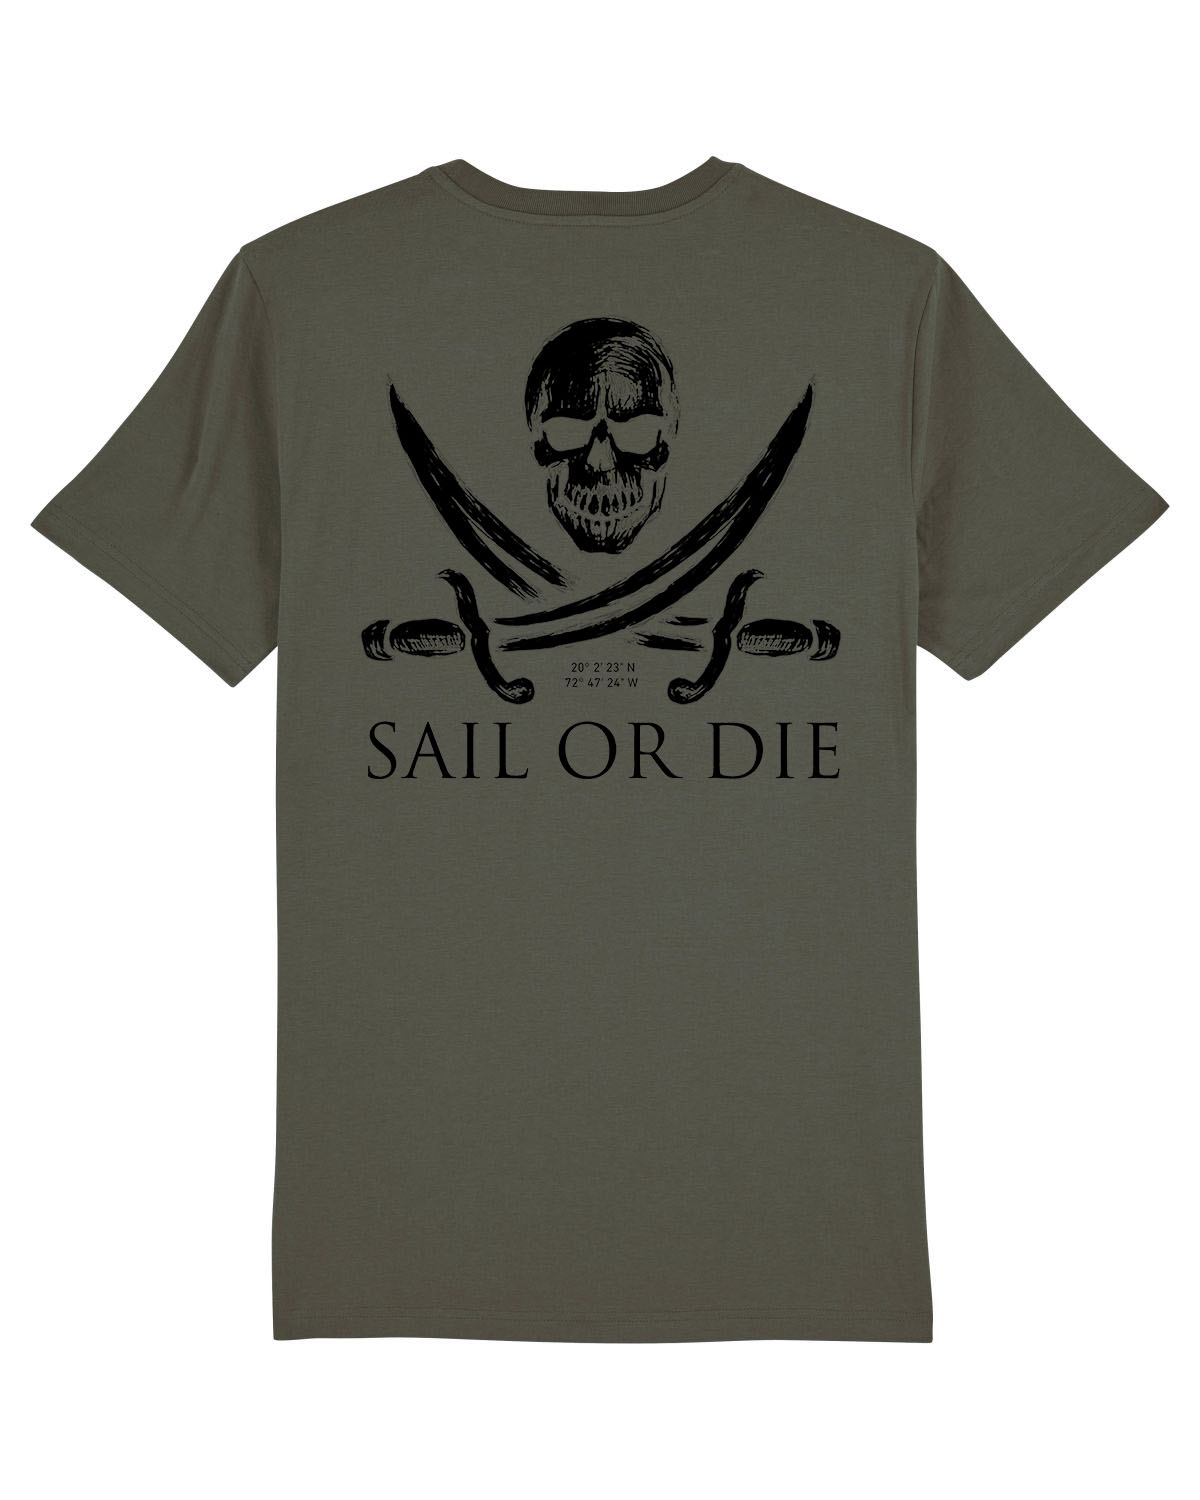 sail or die